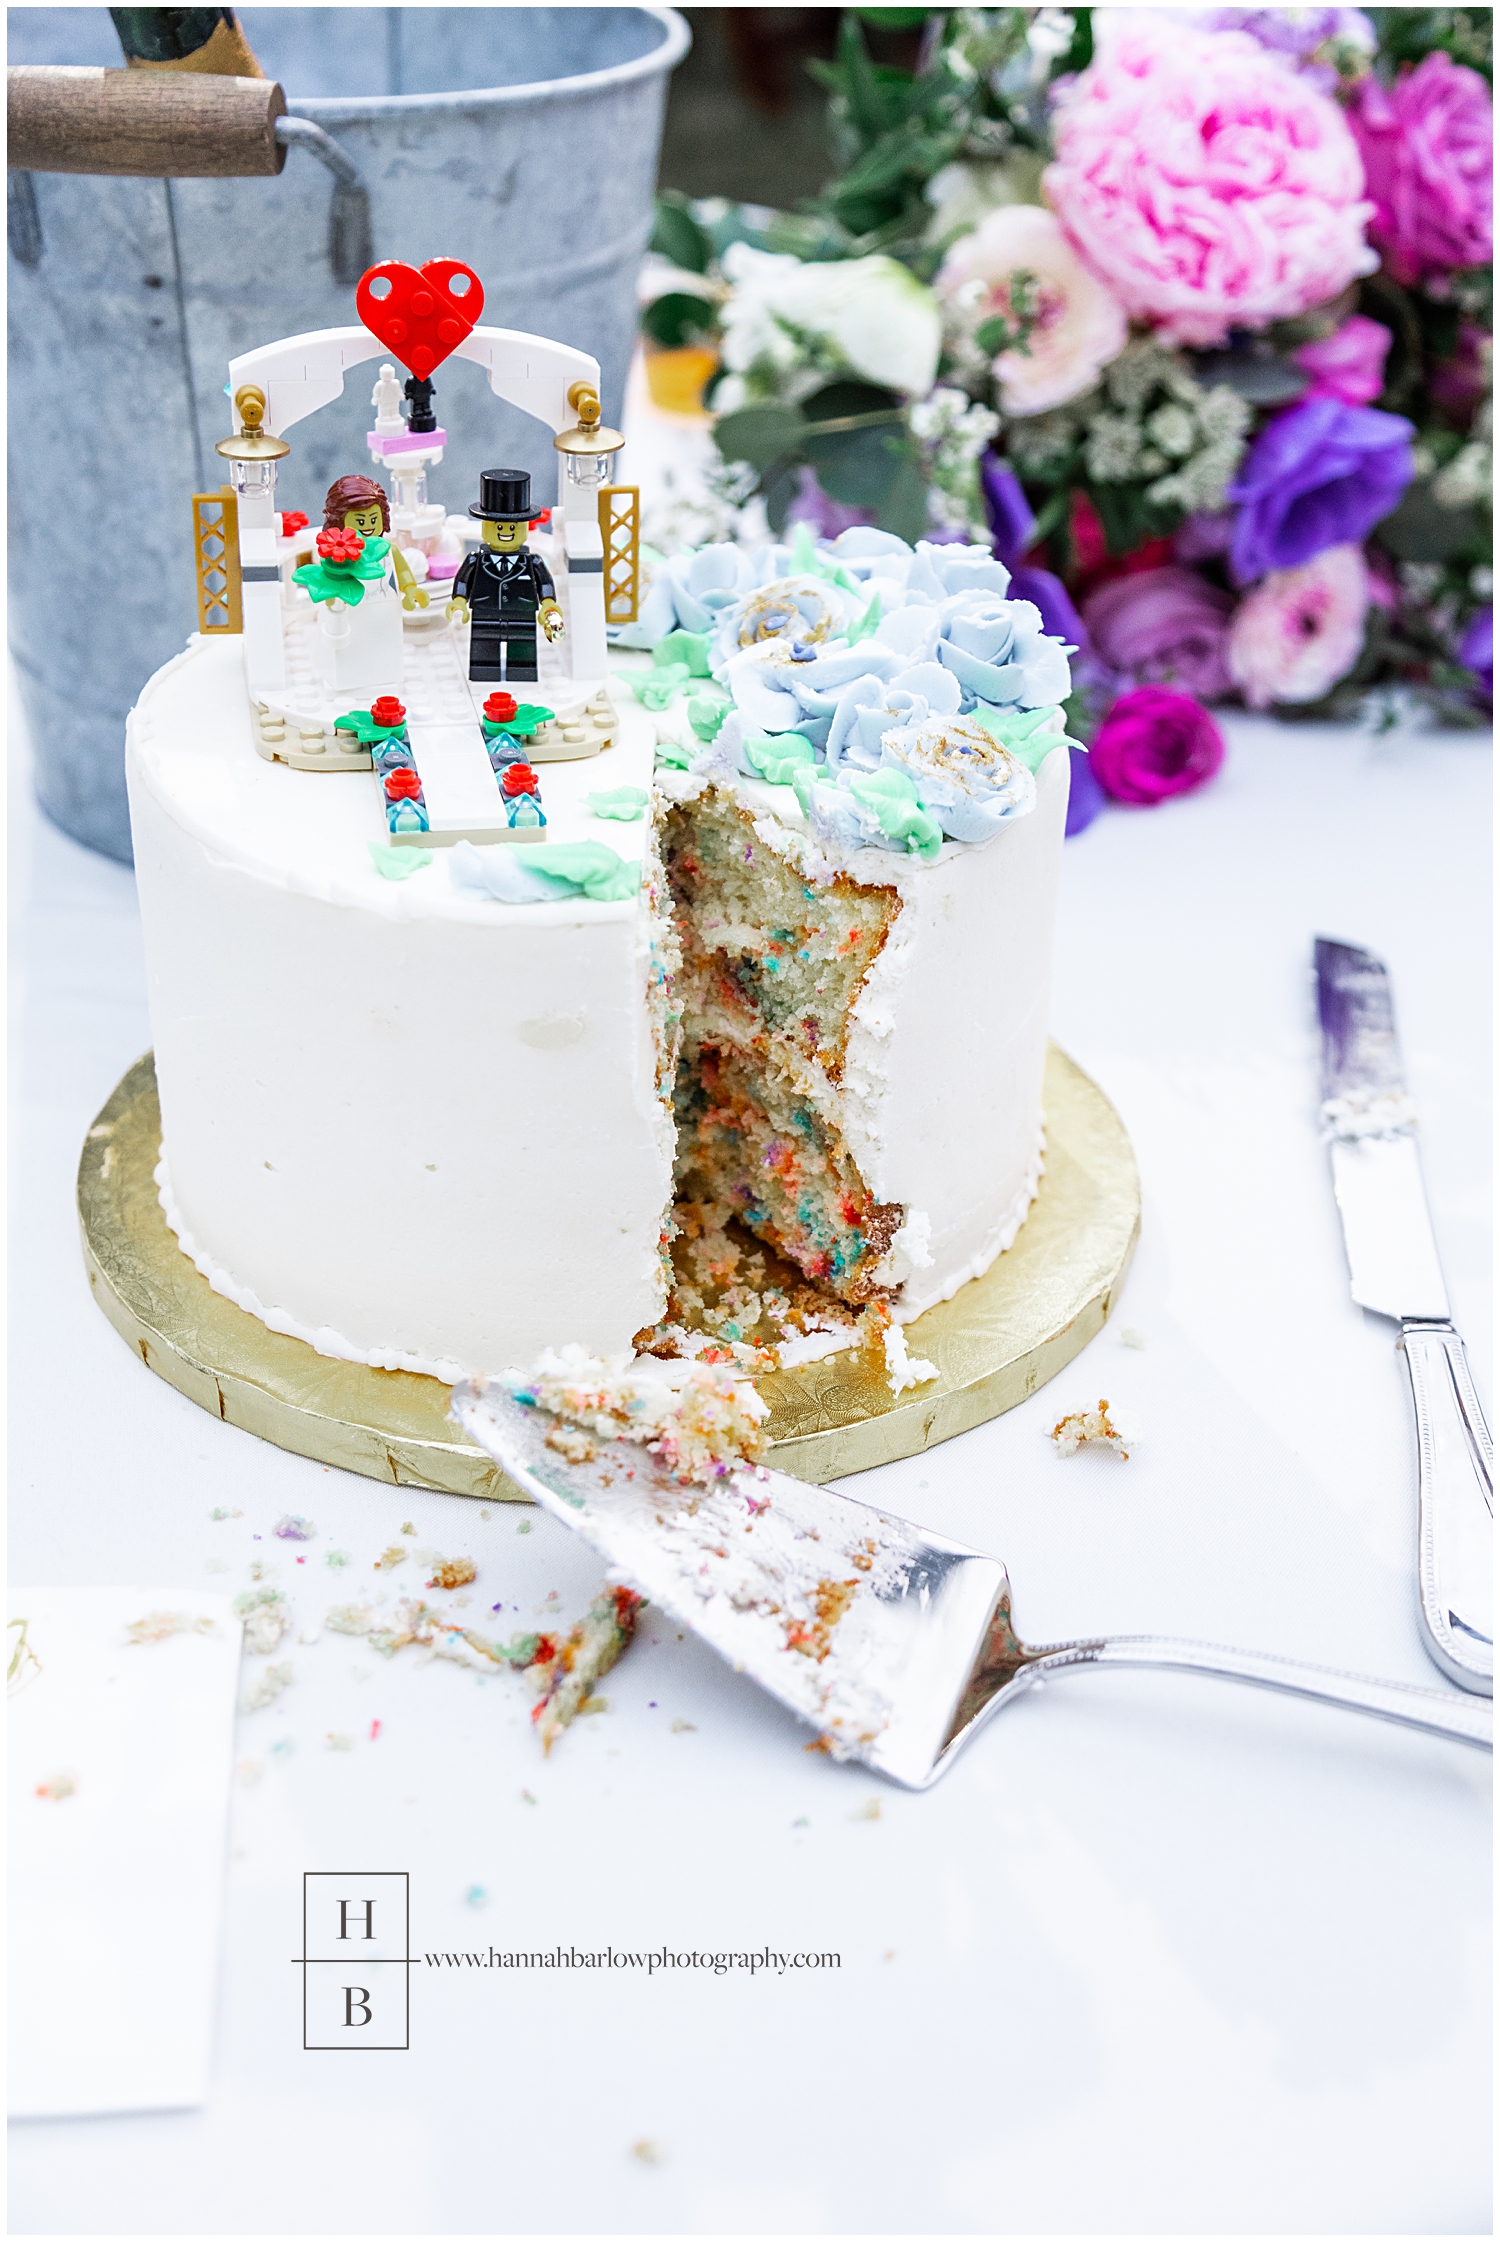 Lego wedding cake is cut featuring confetti icake nside.